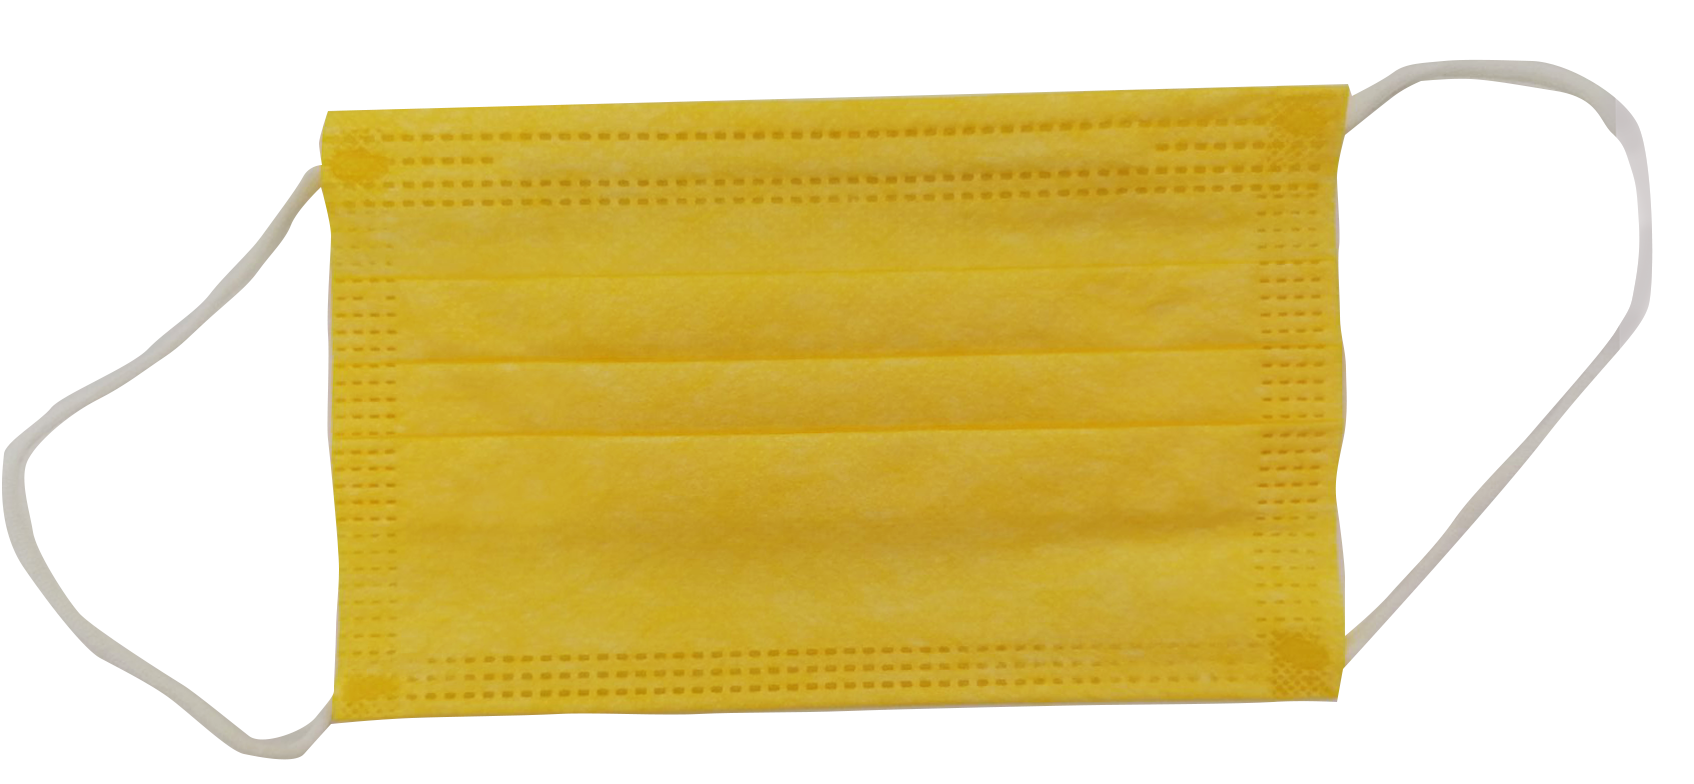 Μάσκες Παιδικές 3ply Χειρουργικές Κίτρινο με Λάστιχο Σε σακουλάκι των 10 τμχ